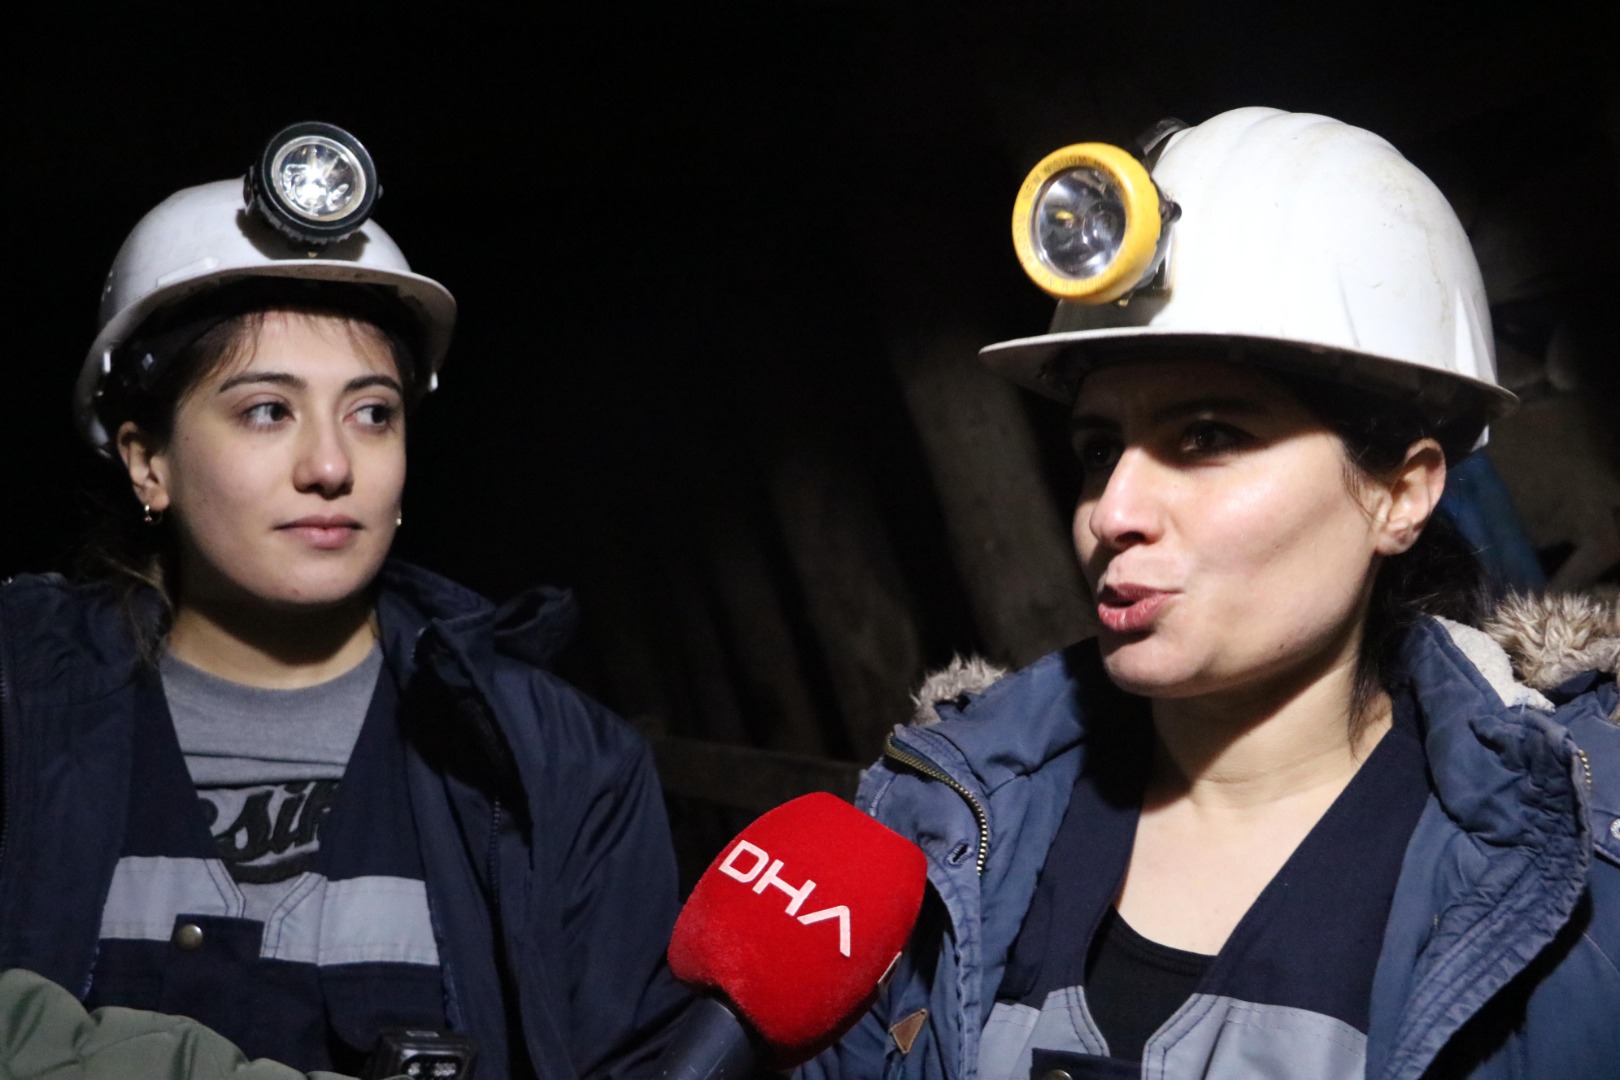 Madencilerin canı 2 kadın mühendise emanet